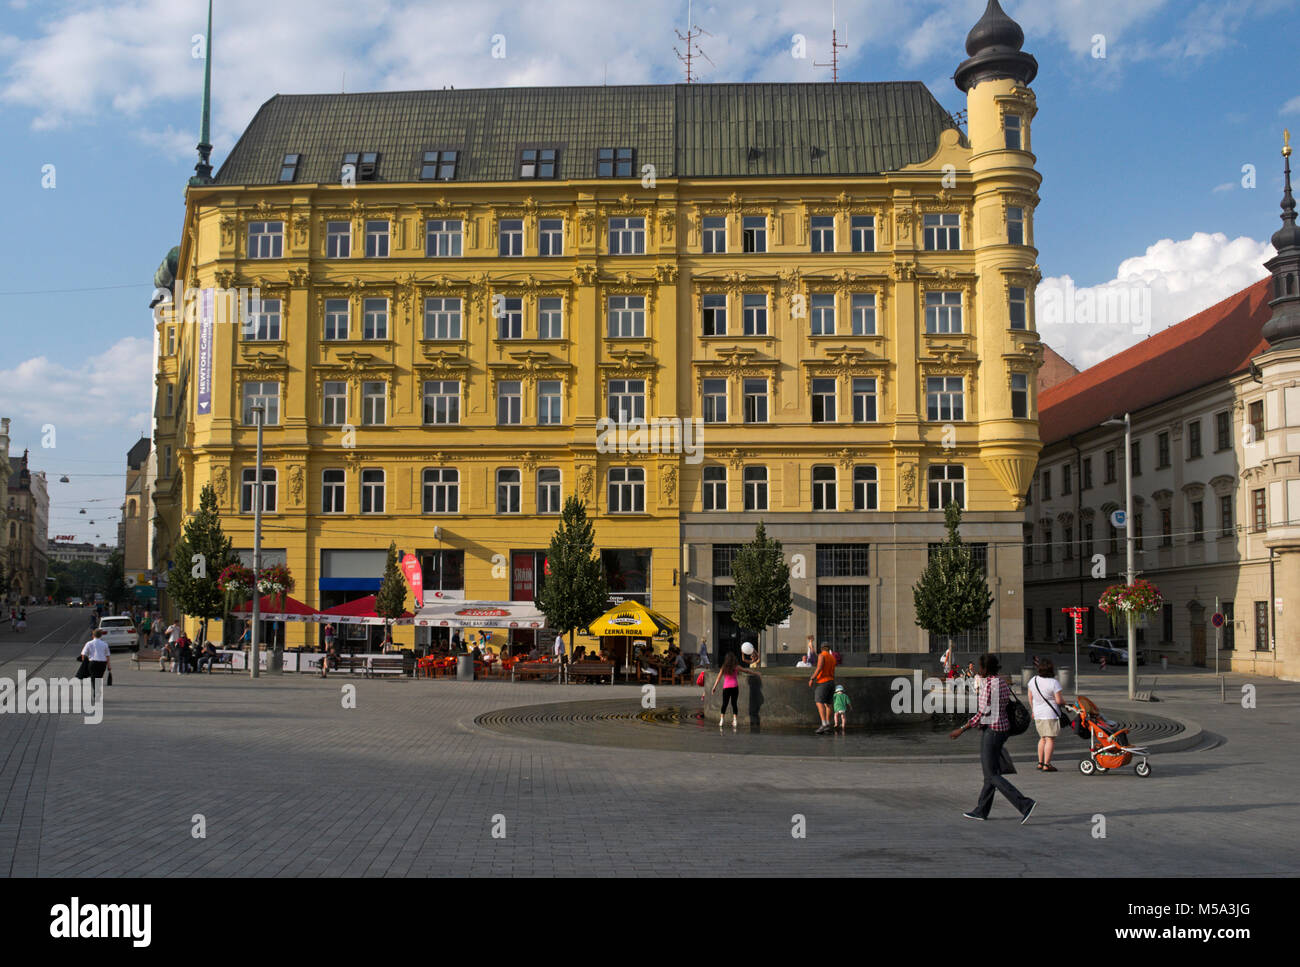 Namesti Svobody (freedom square), main square in Brno, Czech Republic Stock Photo